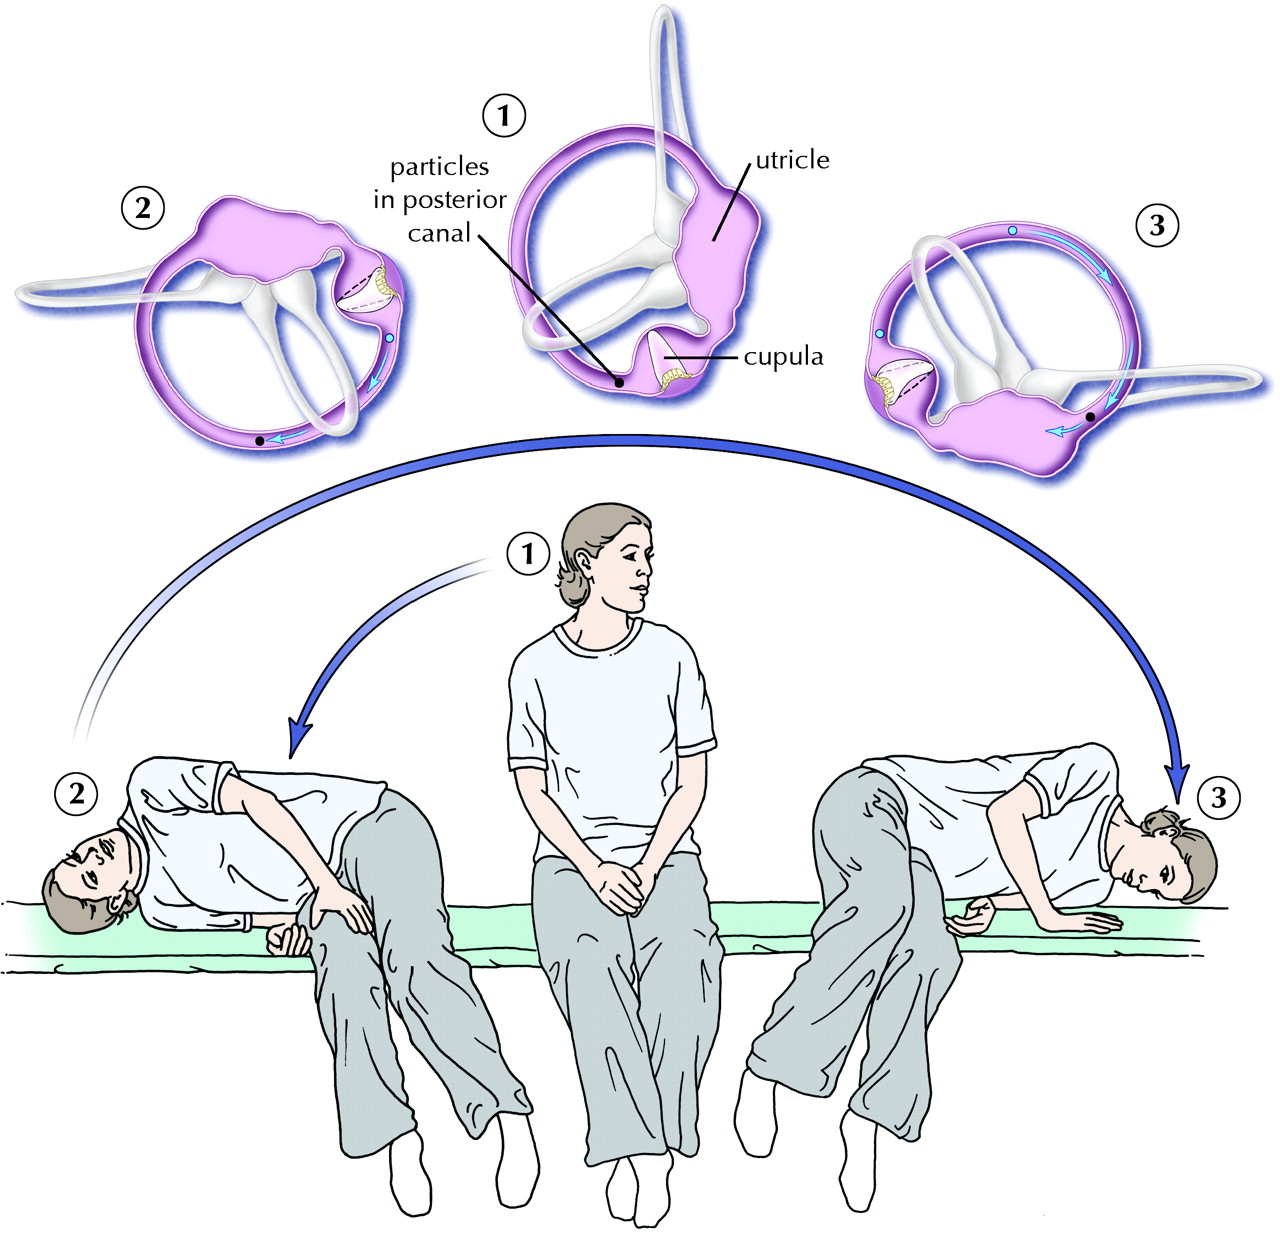 chiropractic technique for vertigo epley maneuver